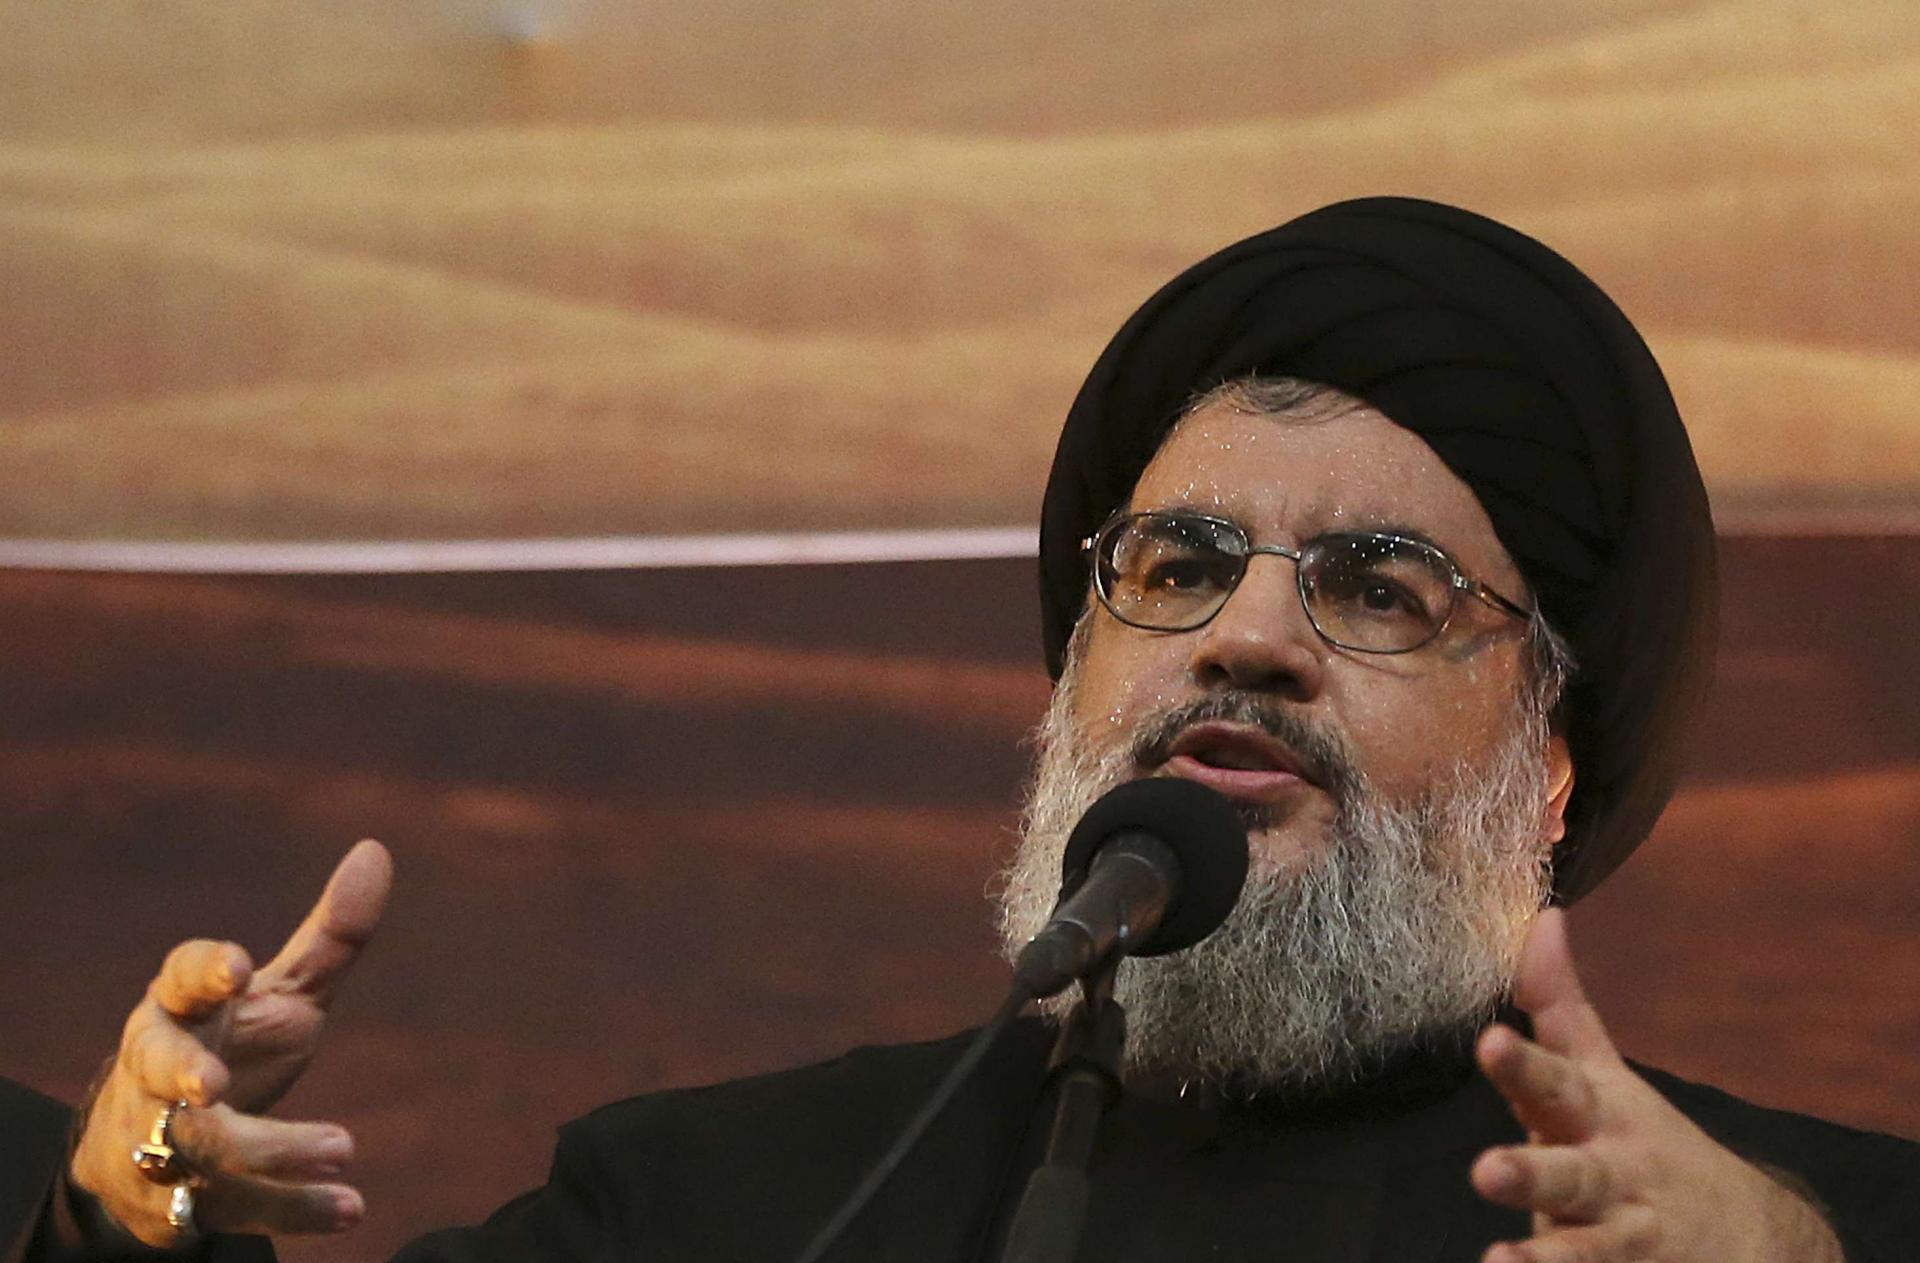 الهتافات الشعبية طالت حزب الله وأمينه العام حسن نصرالله في مشهد لطالما اعتُبر من المحرّمات